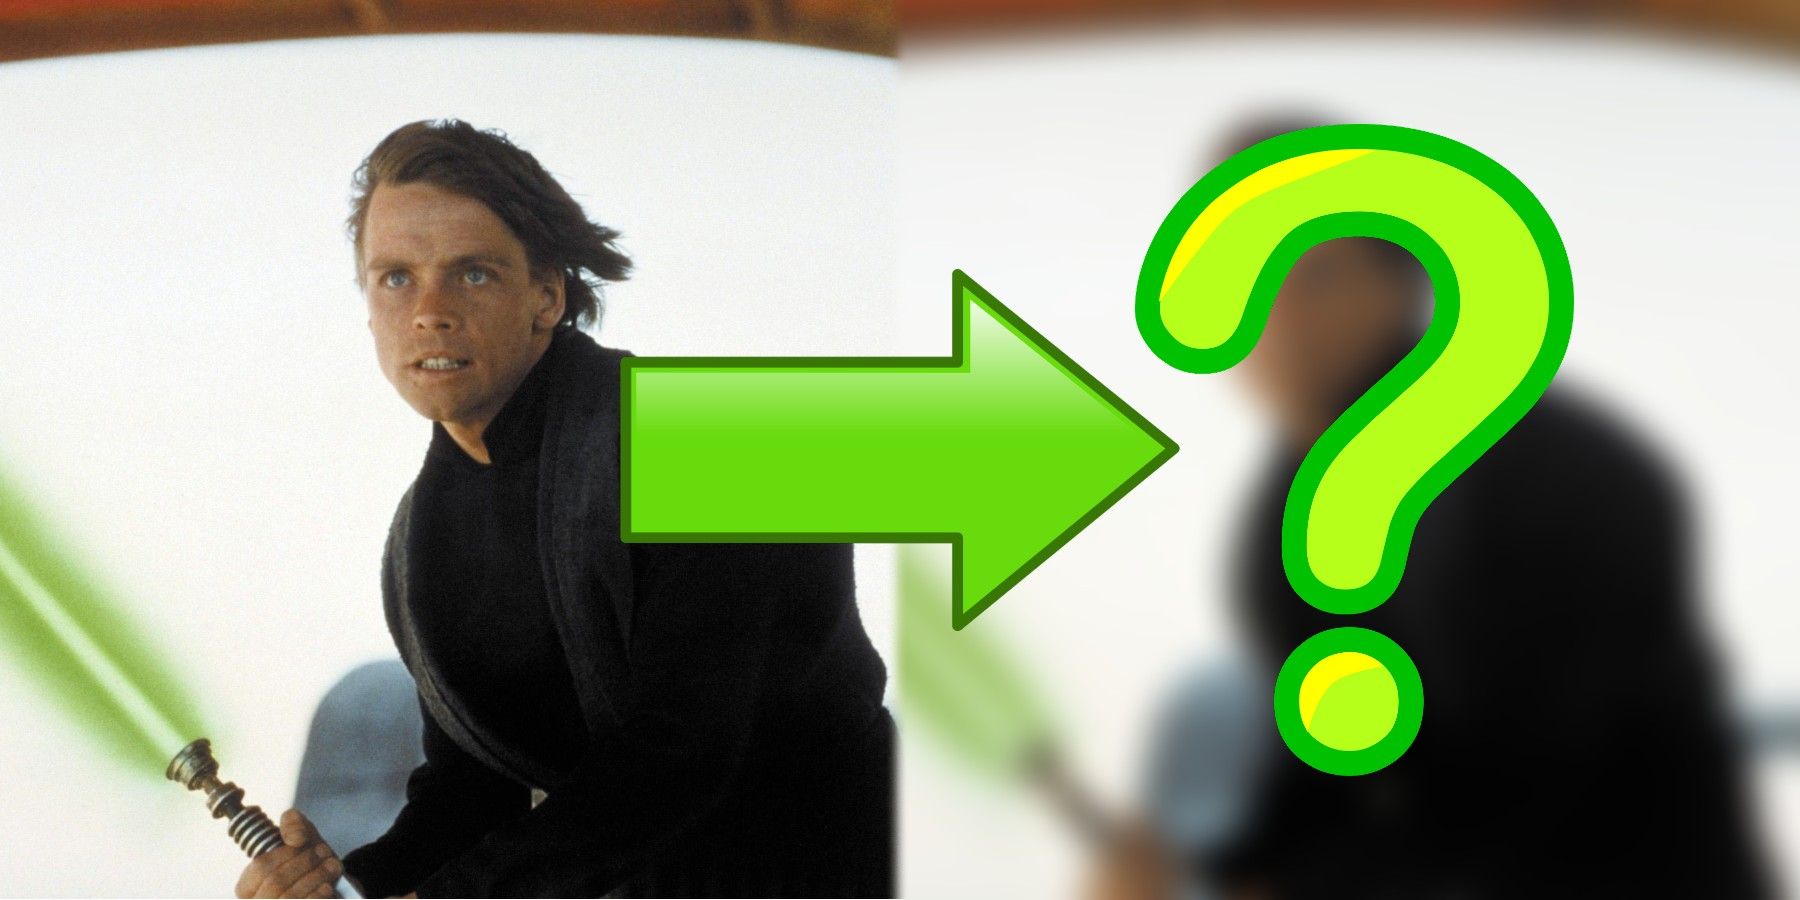 Star Wars Luke Skywalker Return of the Jedi Mark Hamill question